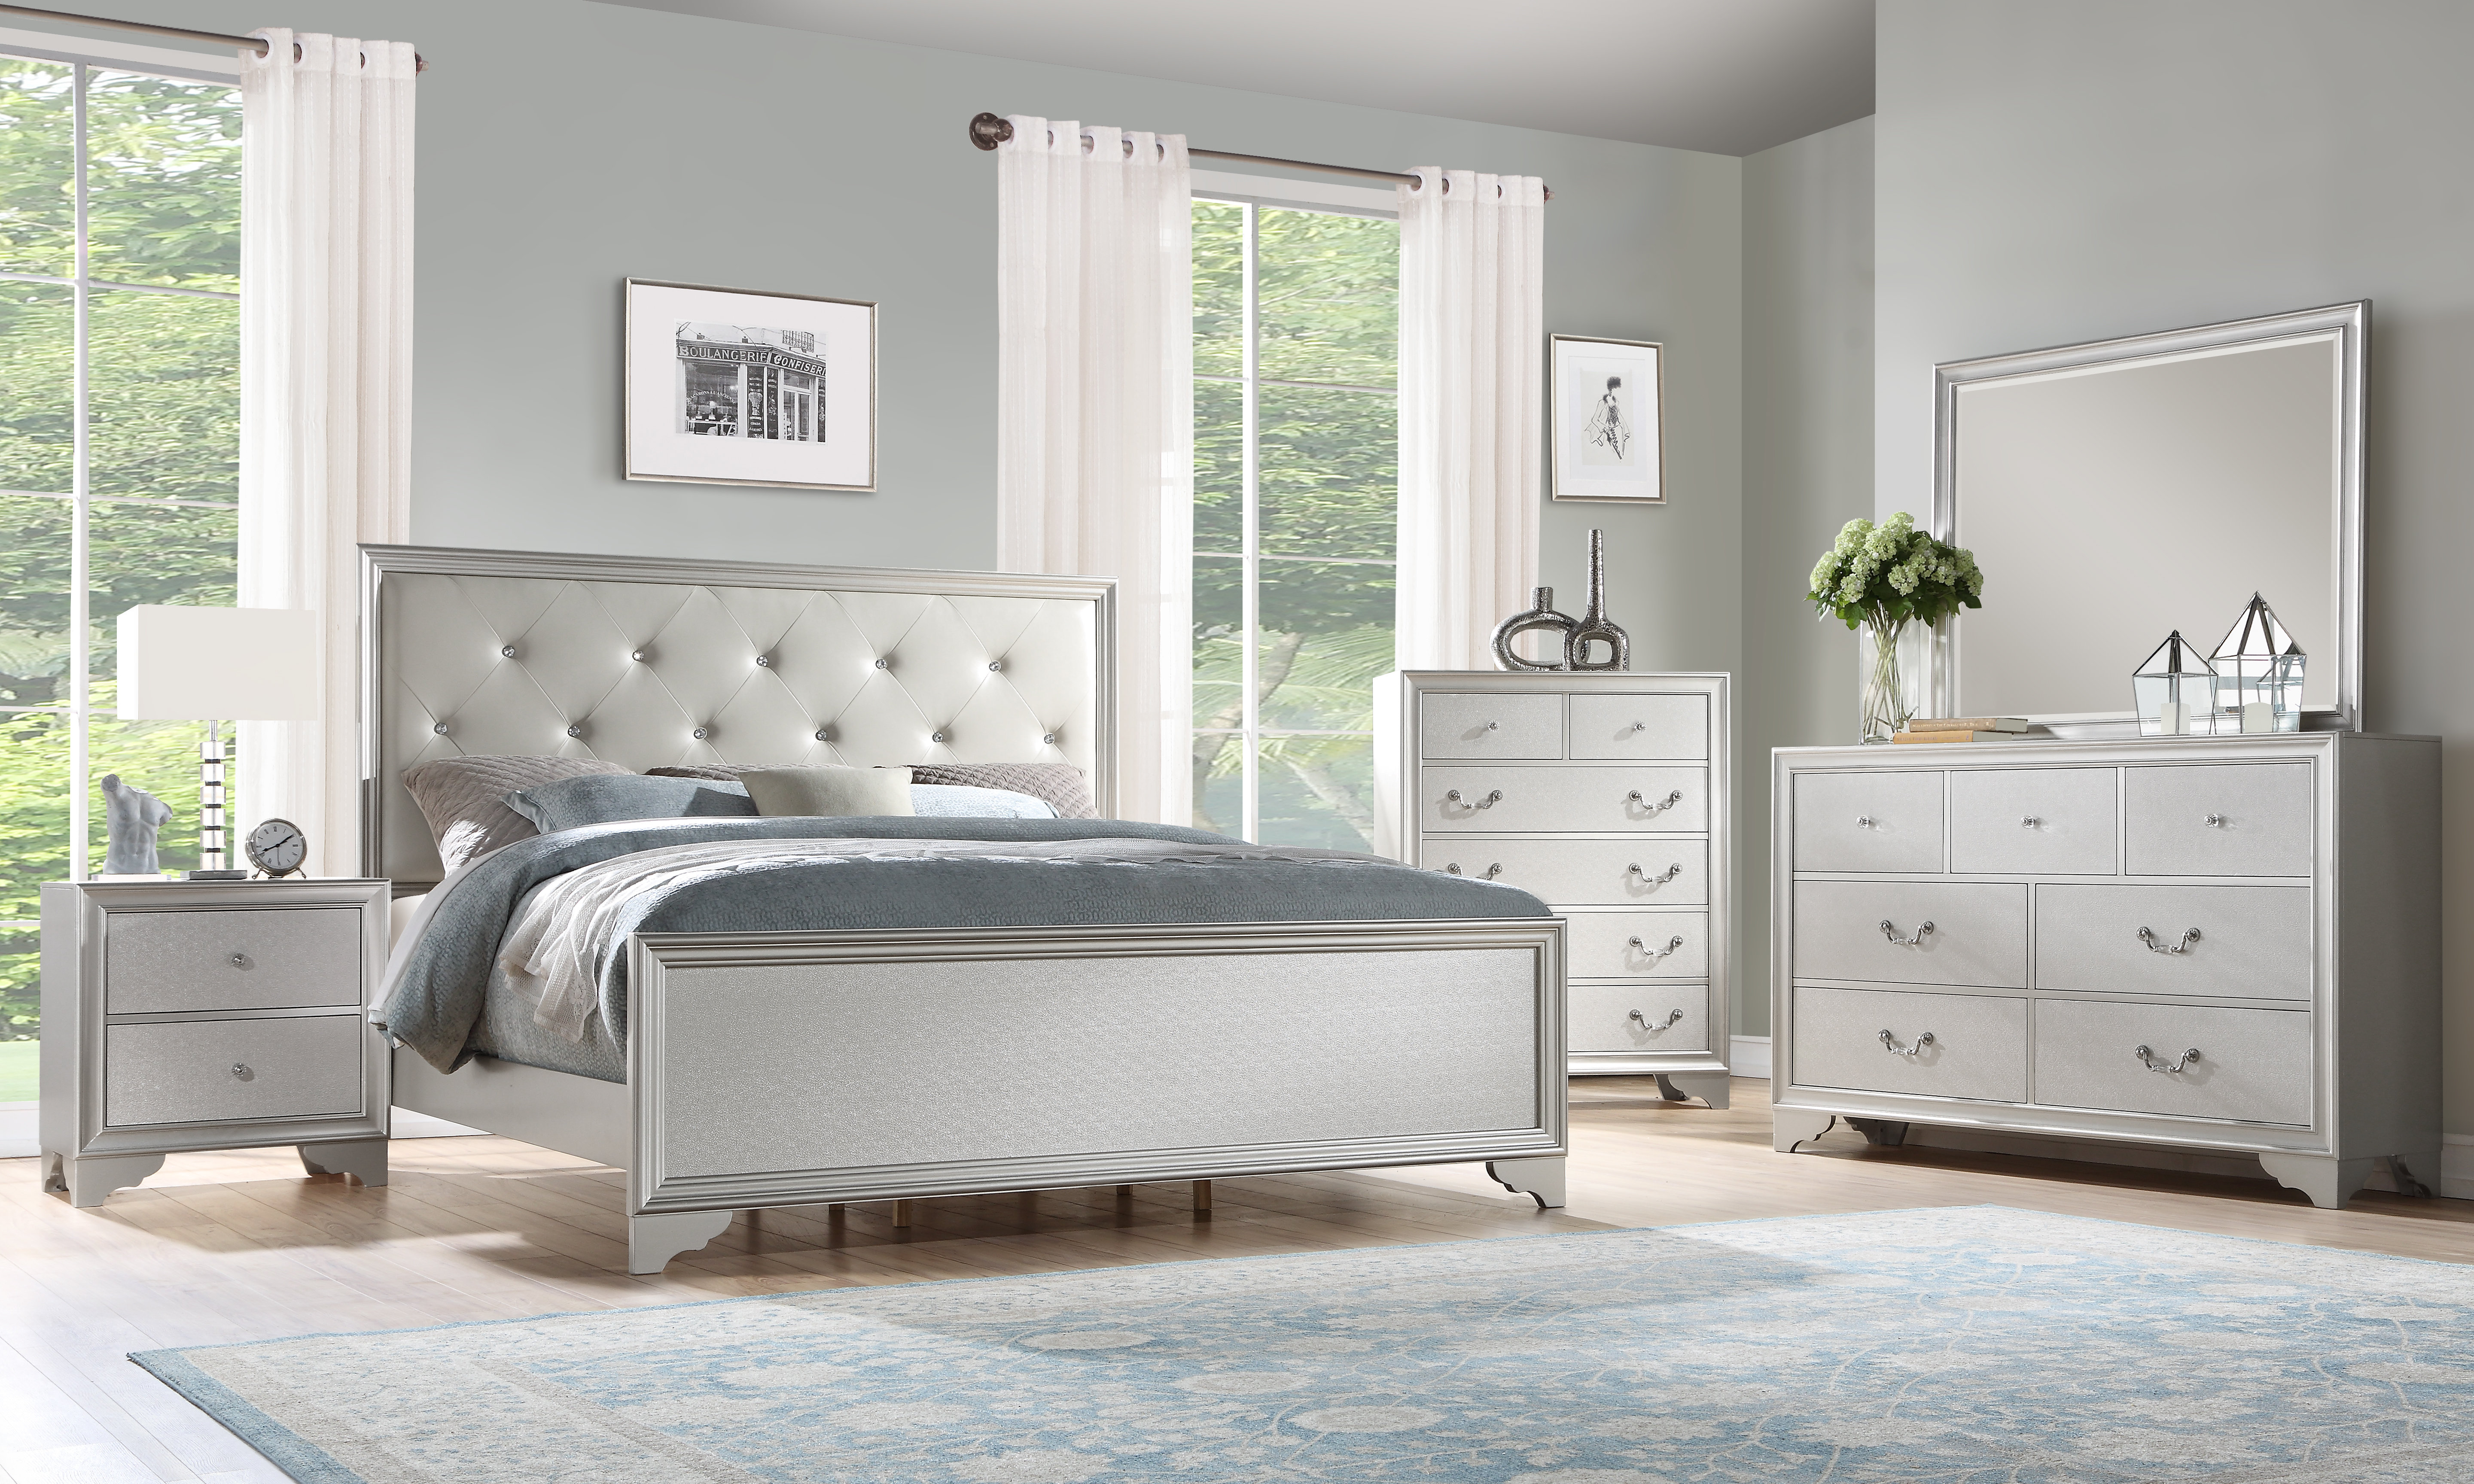 Xan Standard 4 Piece Bedroom Set in size 5760 X 3456